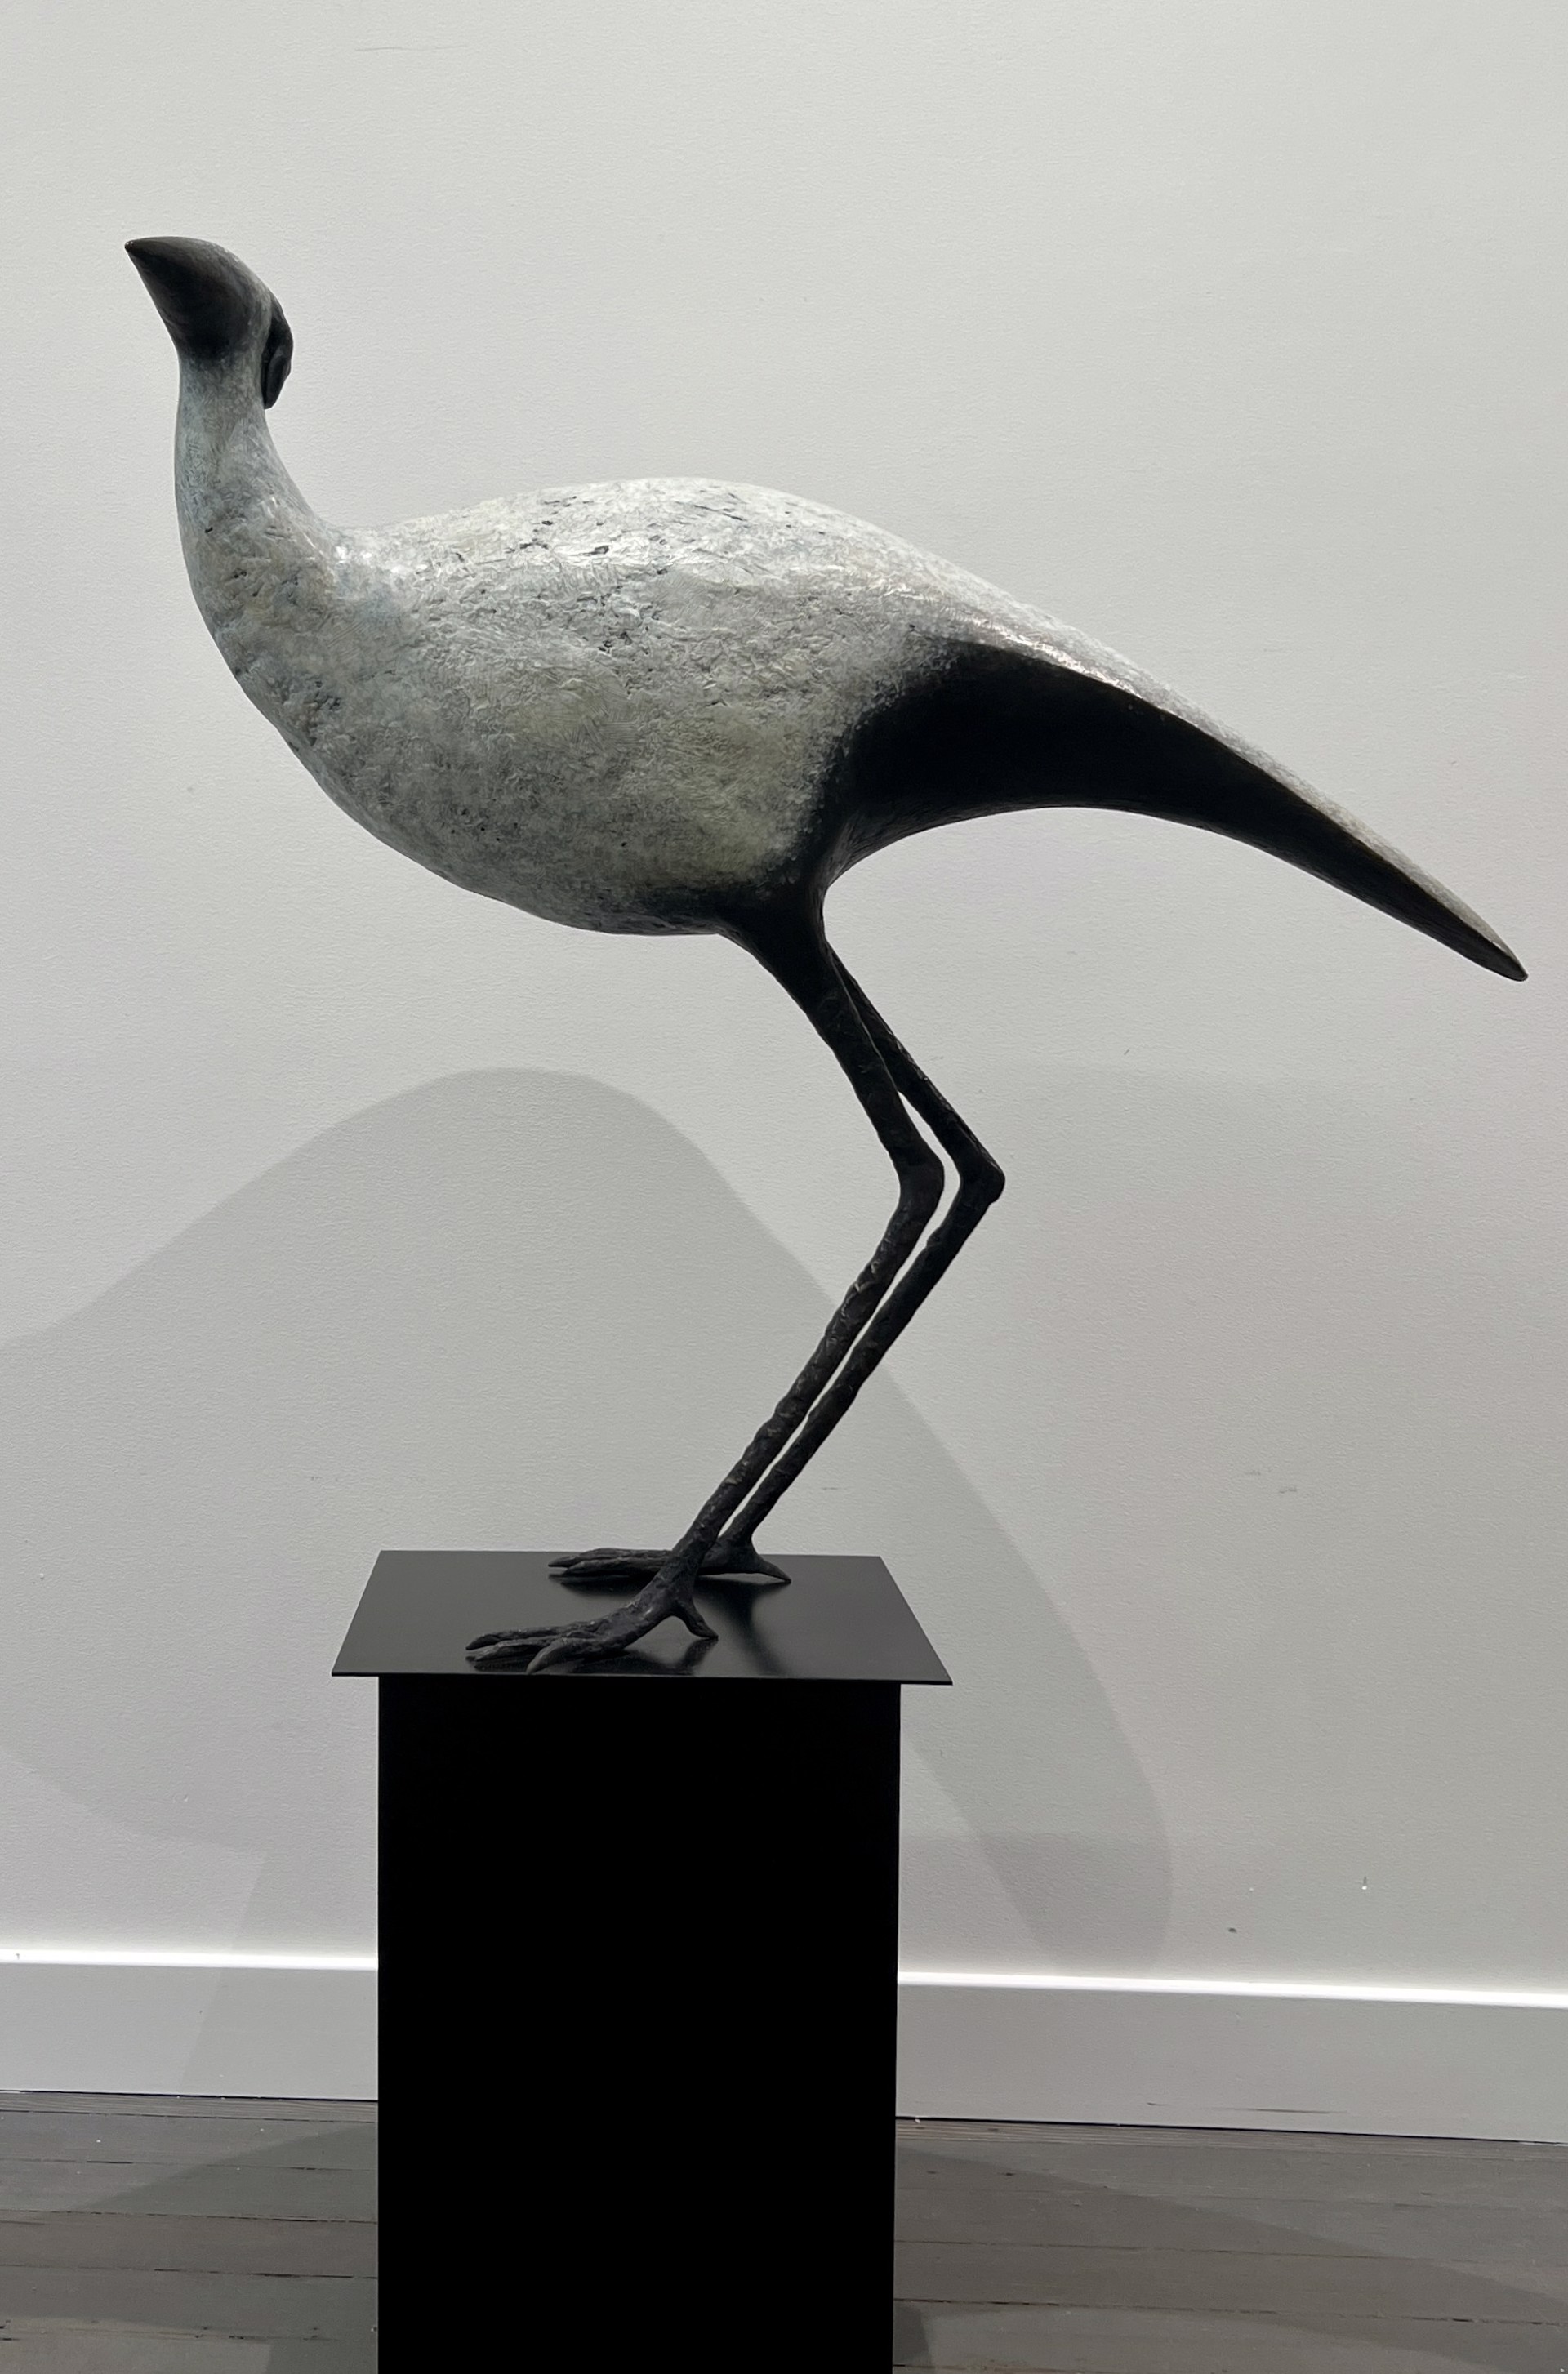 Wading Bird by Copper Tritscheller